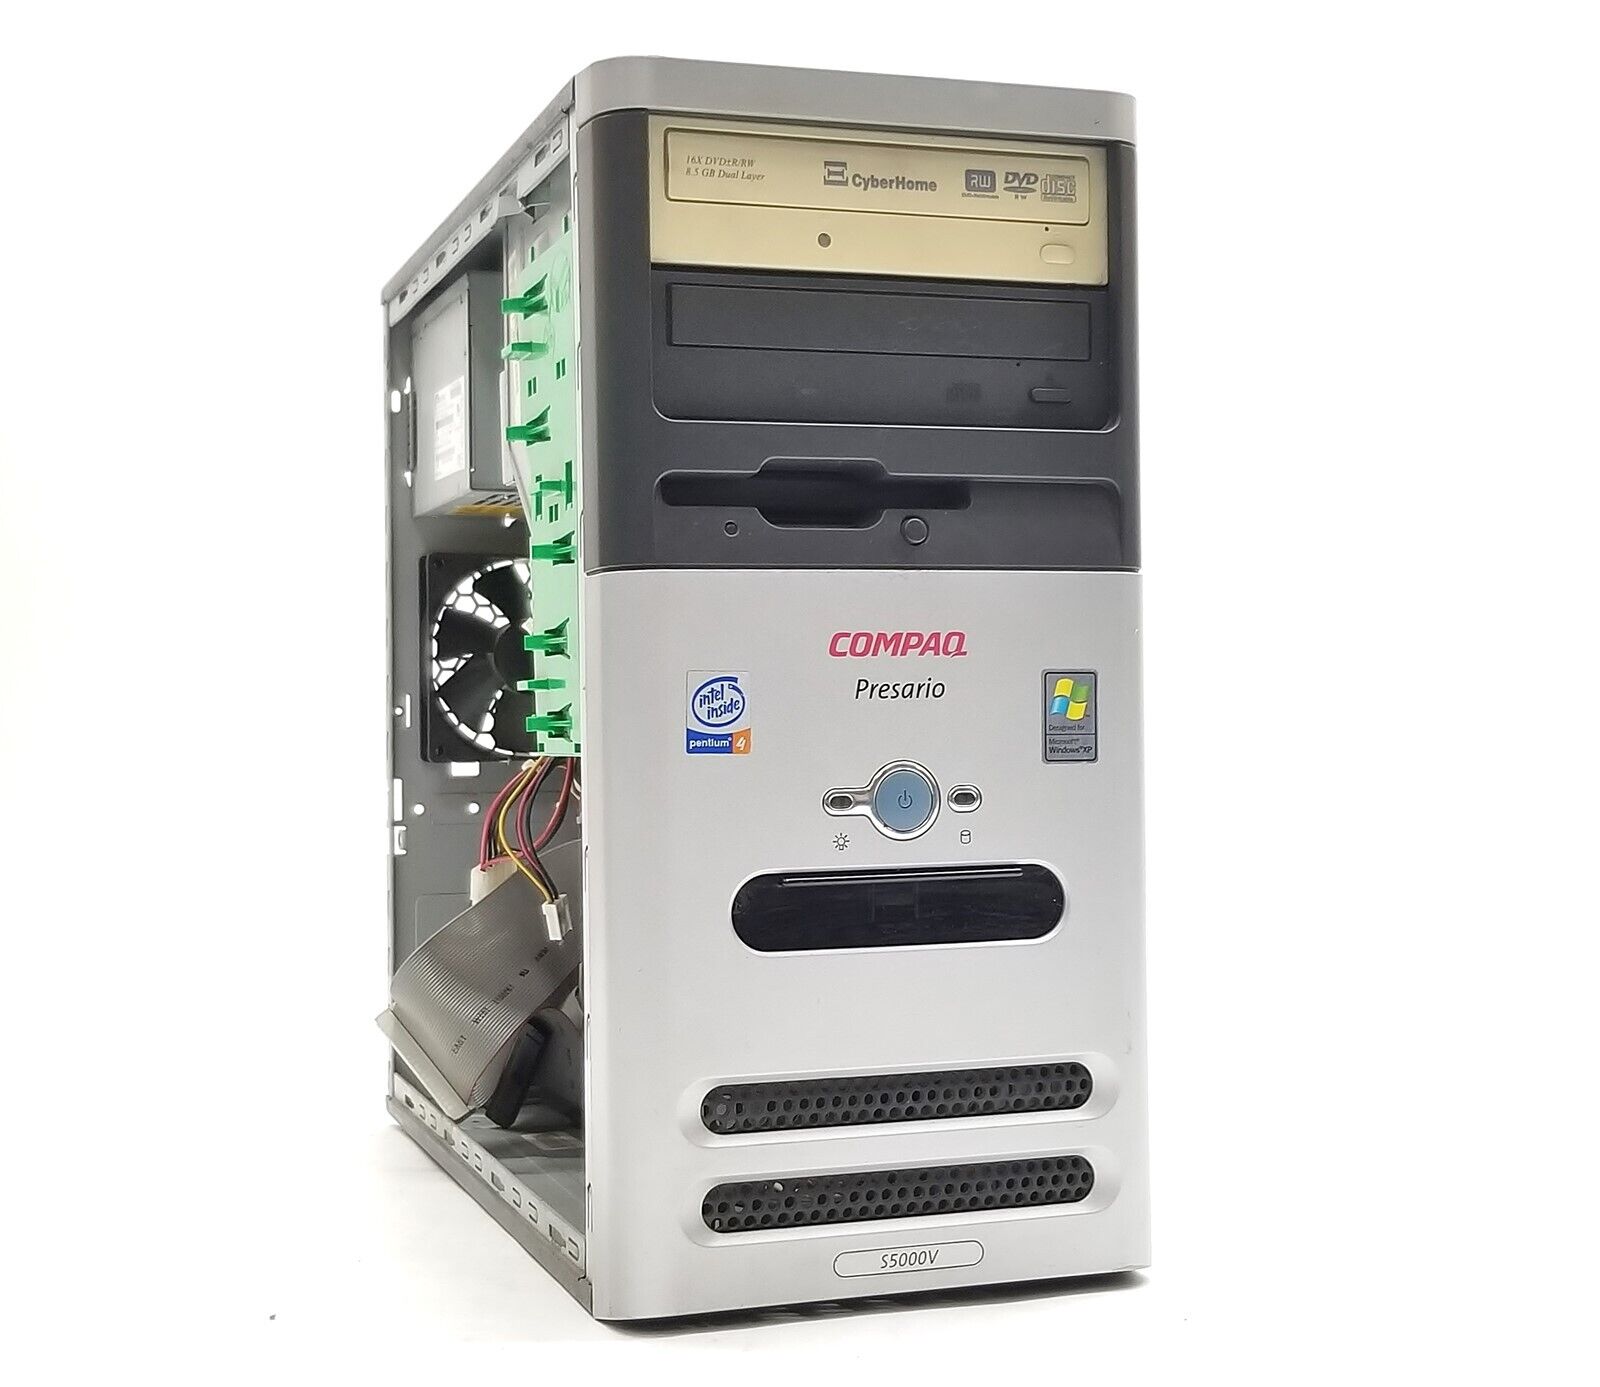 Vintage Compaq Presario S5000V Pentium 4 2.5GHz 1GB RAM NO/HD Retro PC Desktop